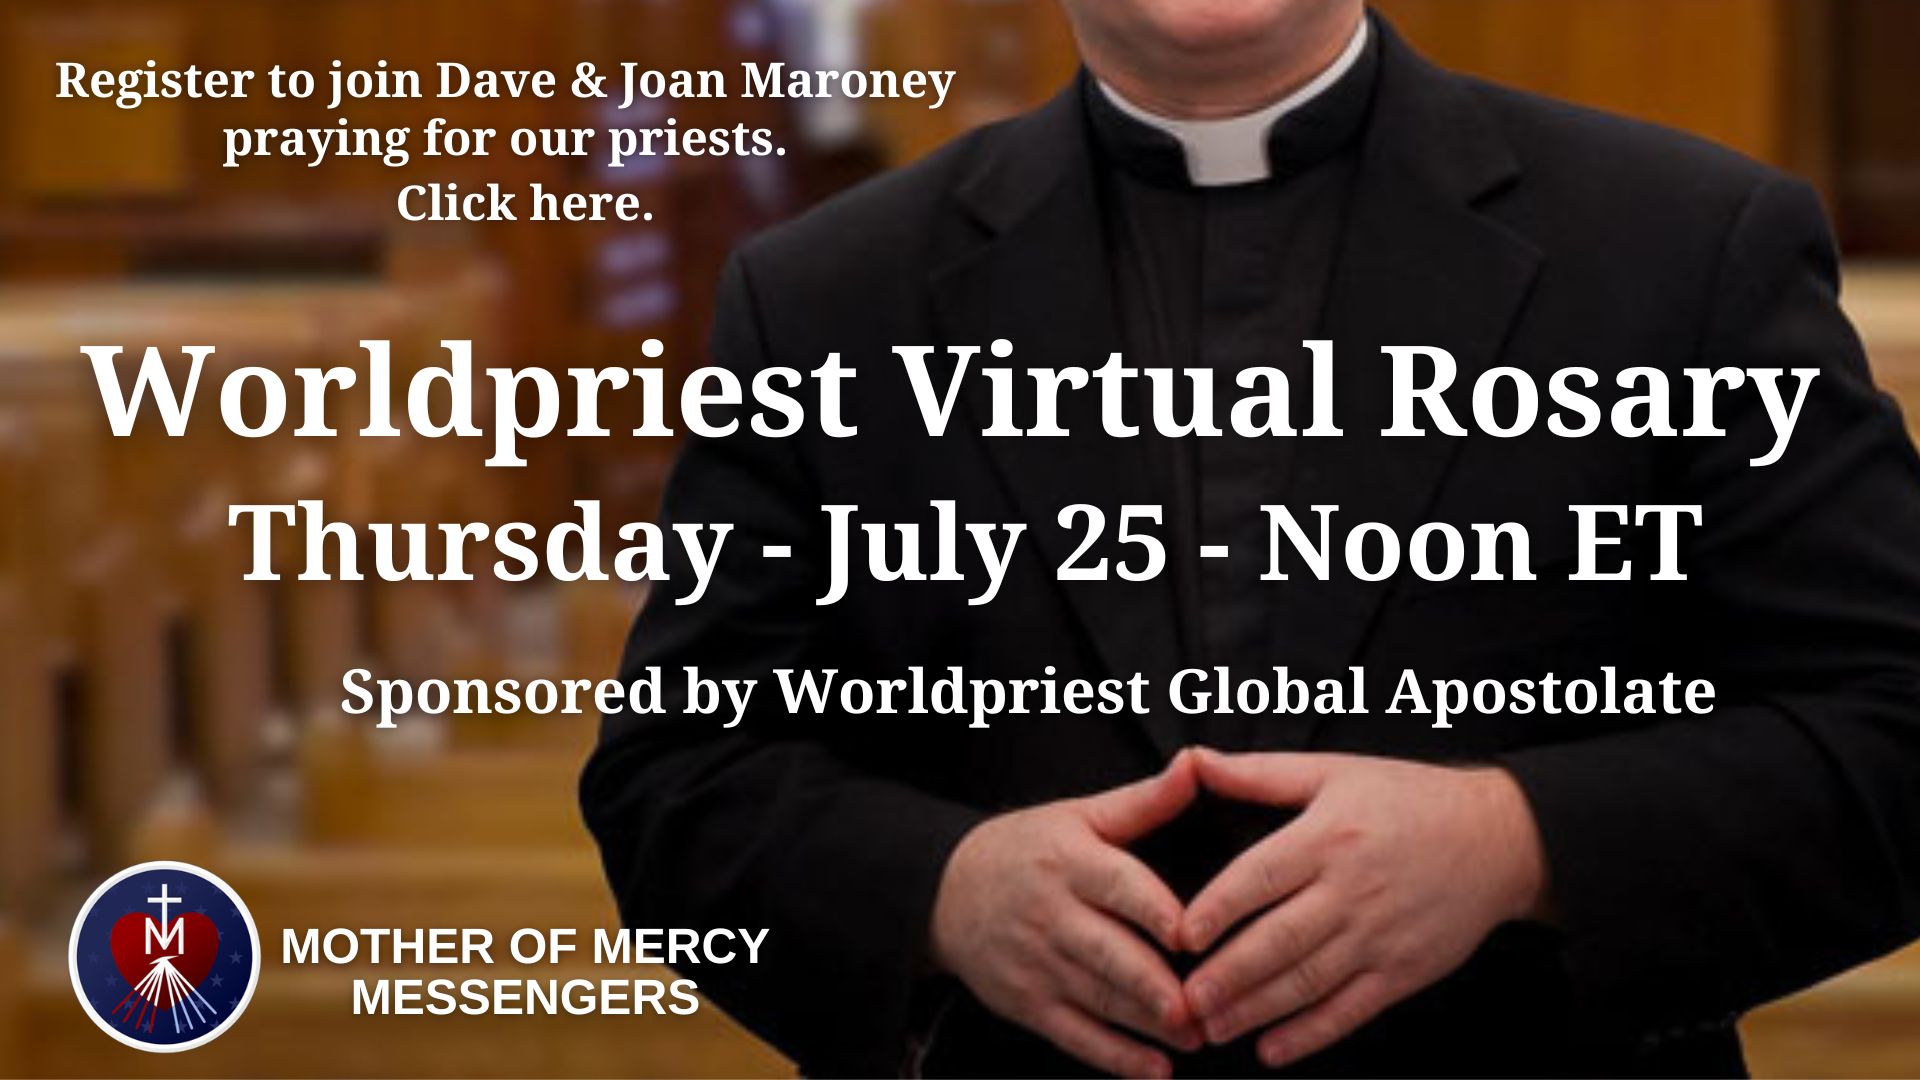 https://www.worldpriest.com/rosary-thursday/#register